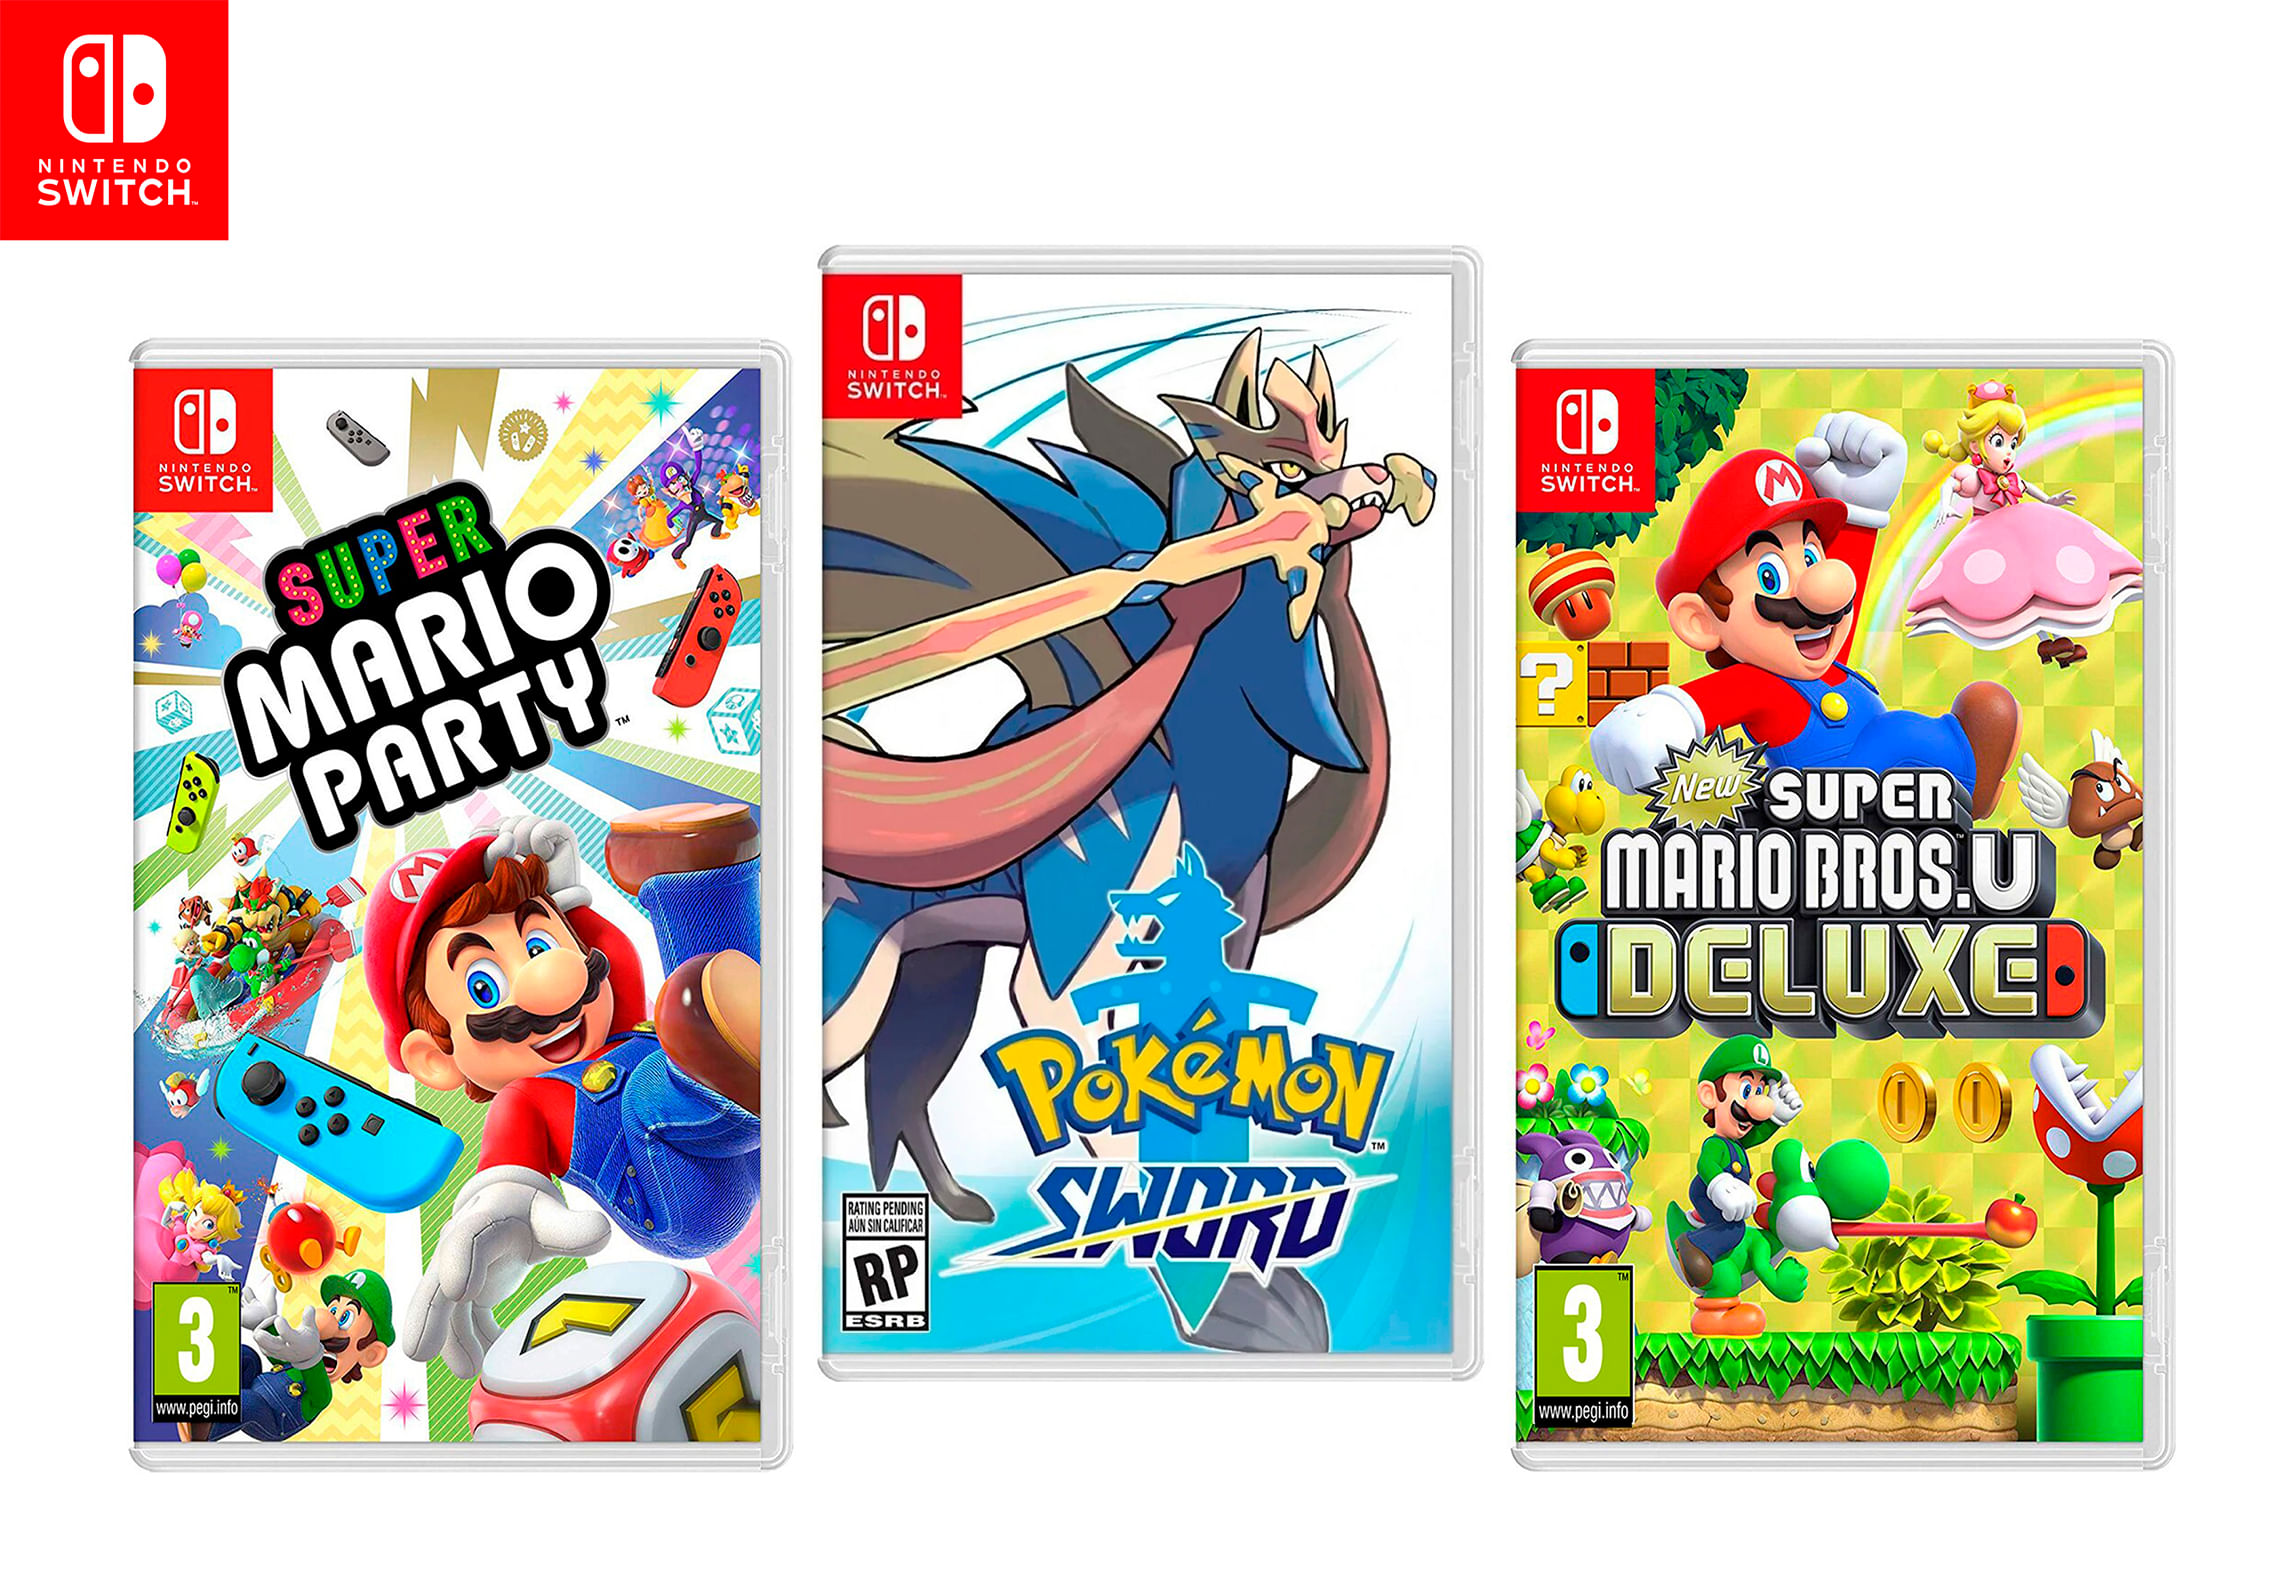 Juegos de Nintendo Switch: Super Mario Party + Pokemon Sword + New Super Mario Bross